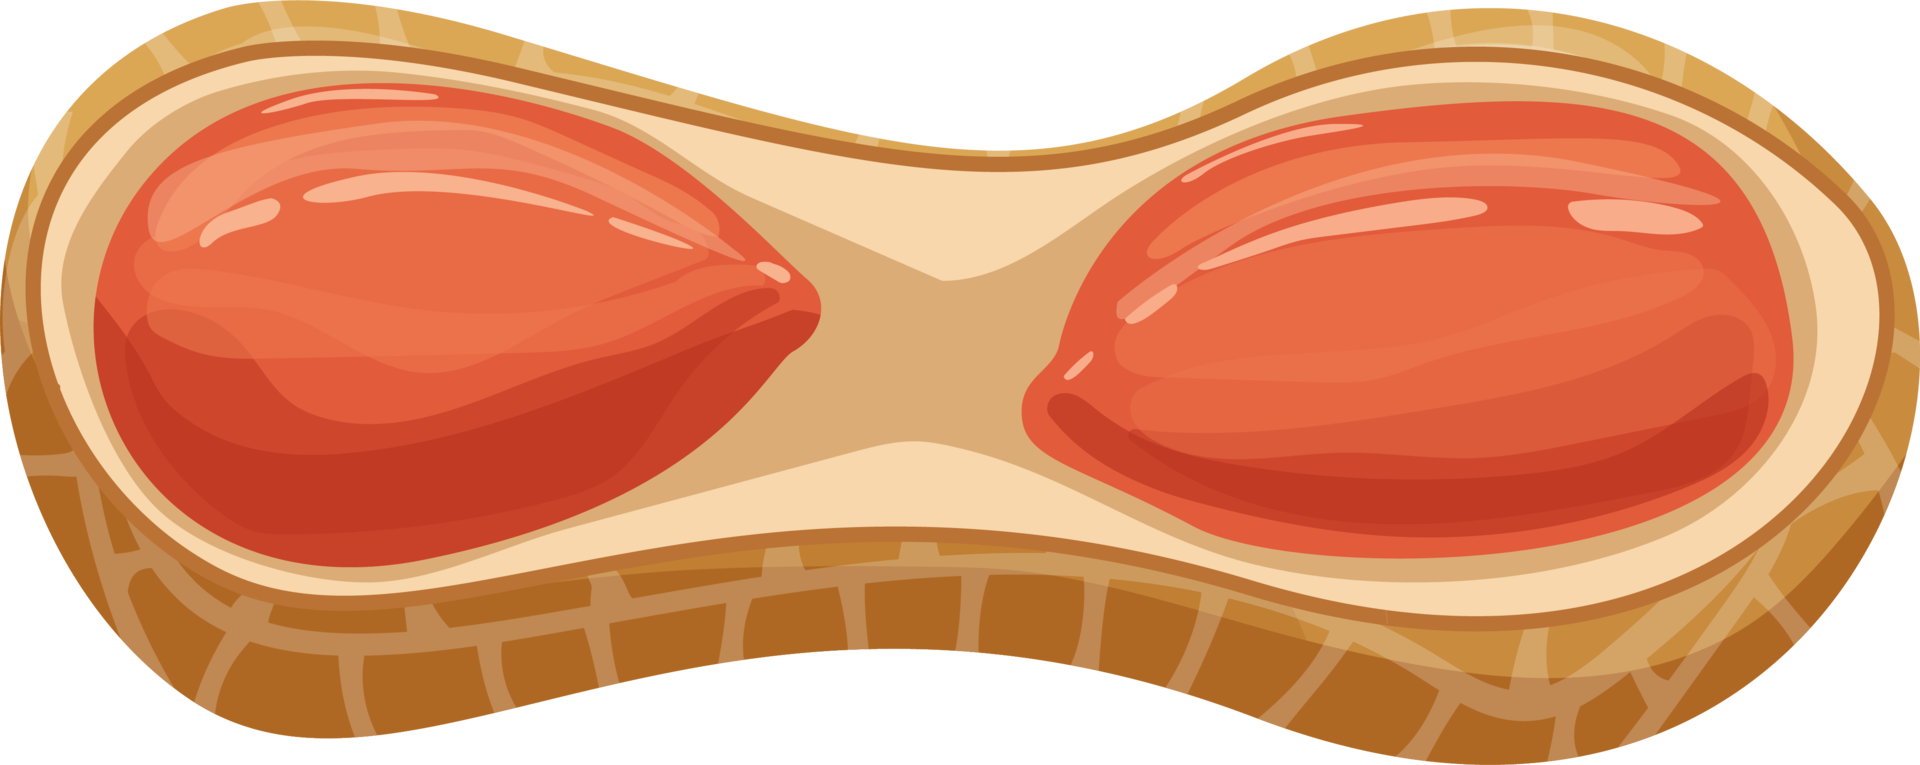 ilustração desing de clipart de nozes e amendoins png